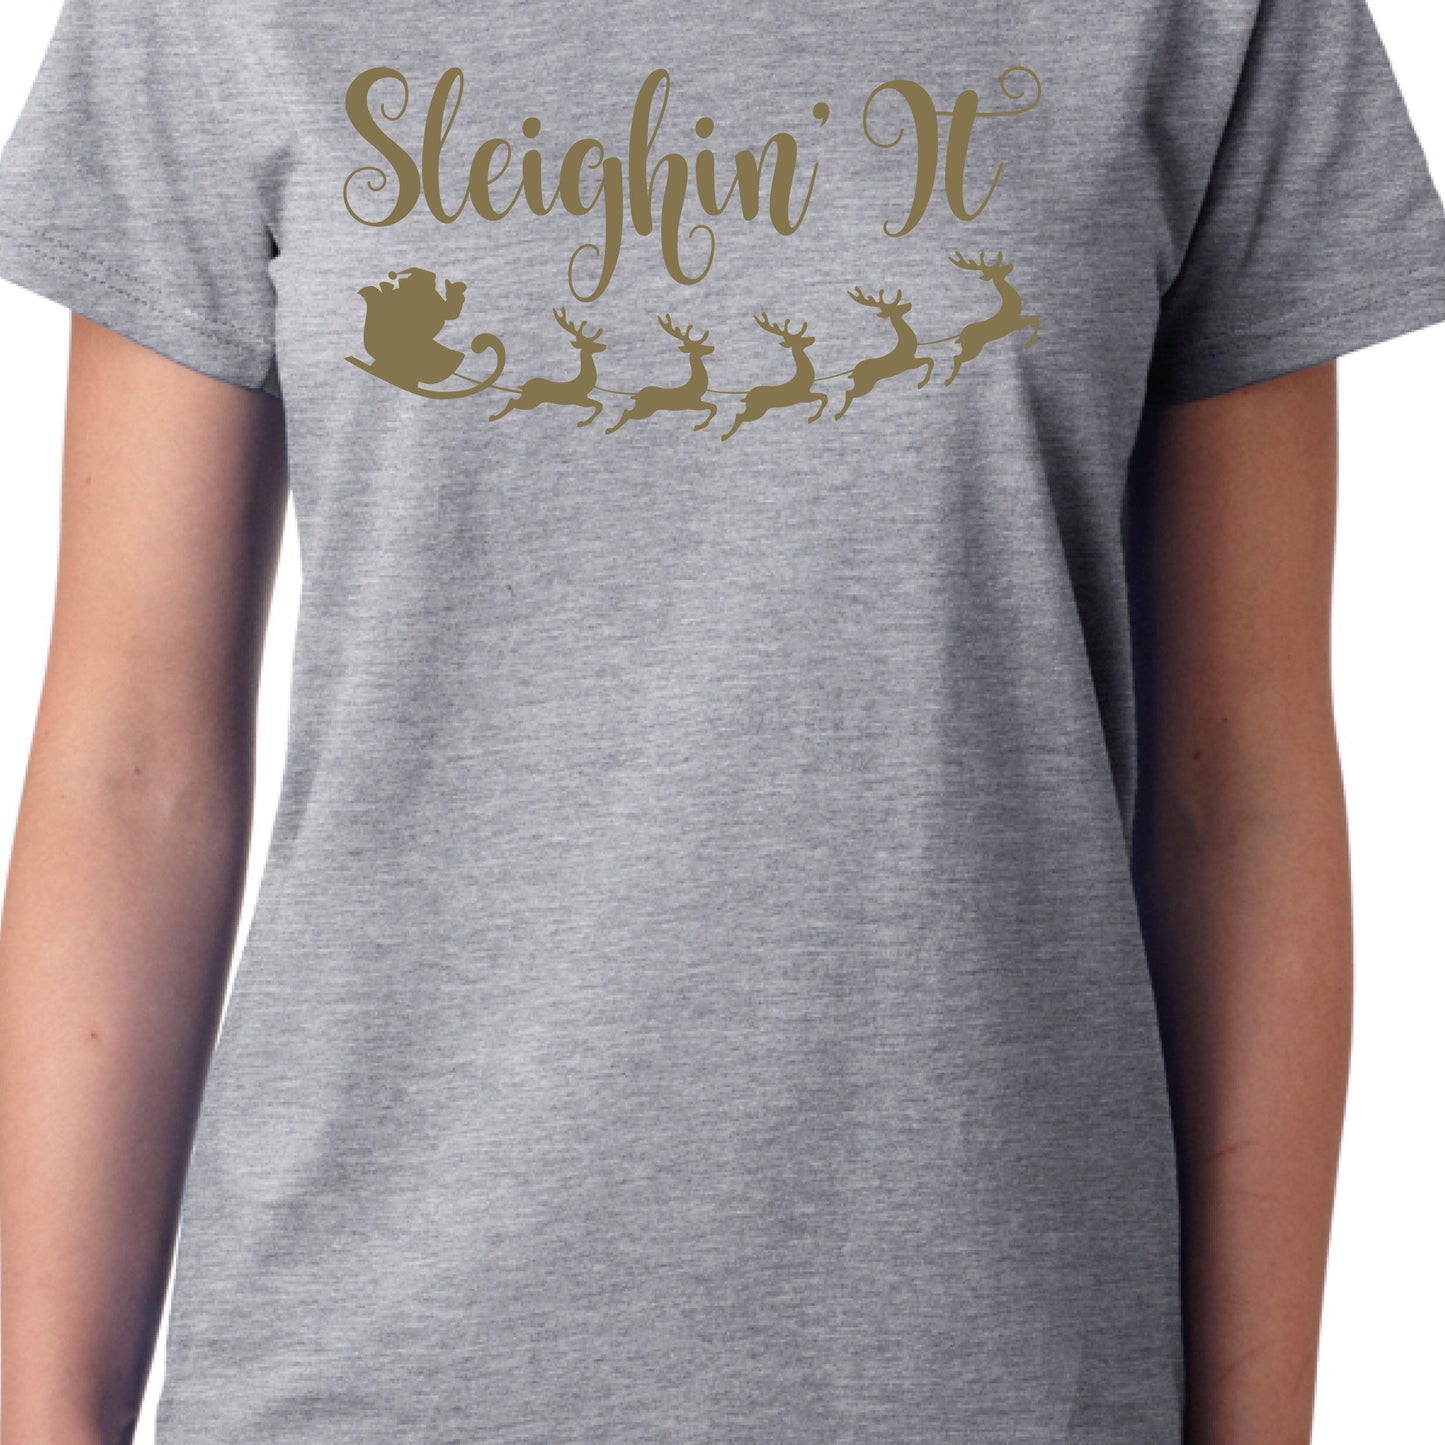 Sleighin' It T-shirt B, Funny Christmas Gift